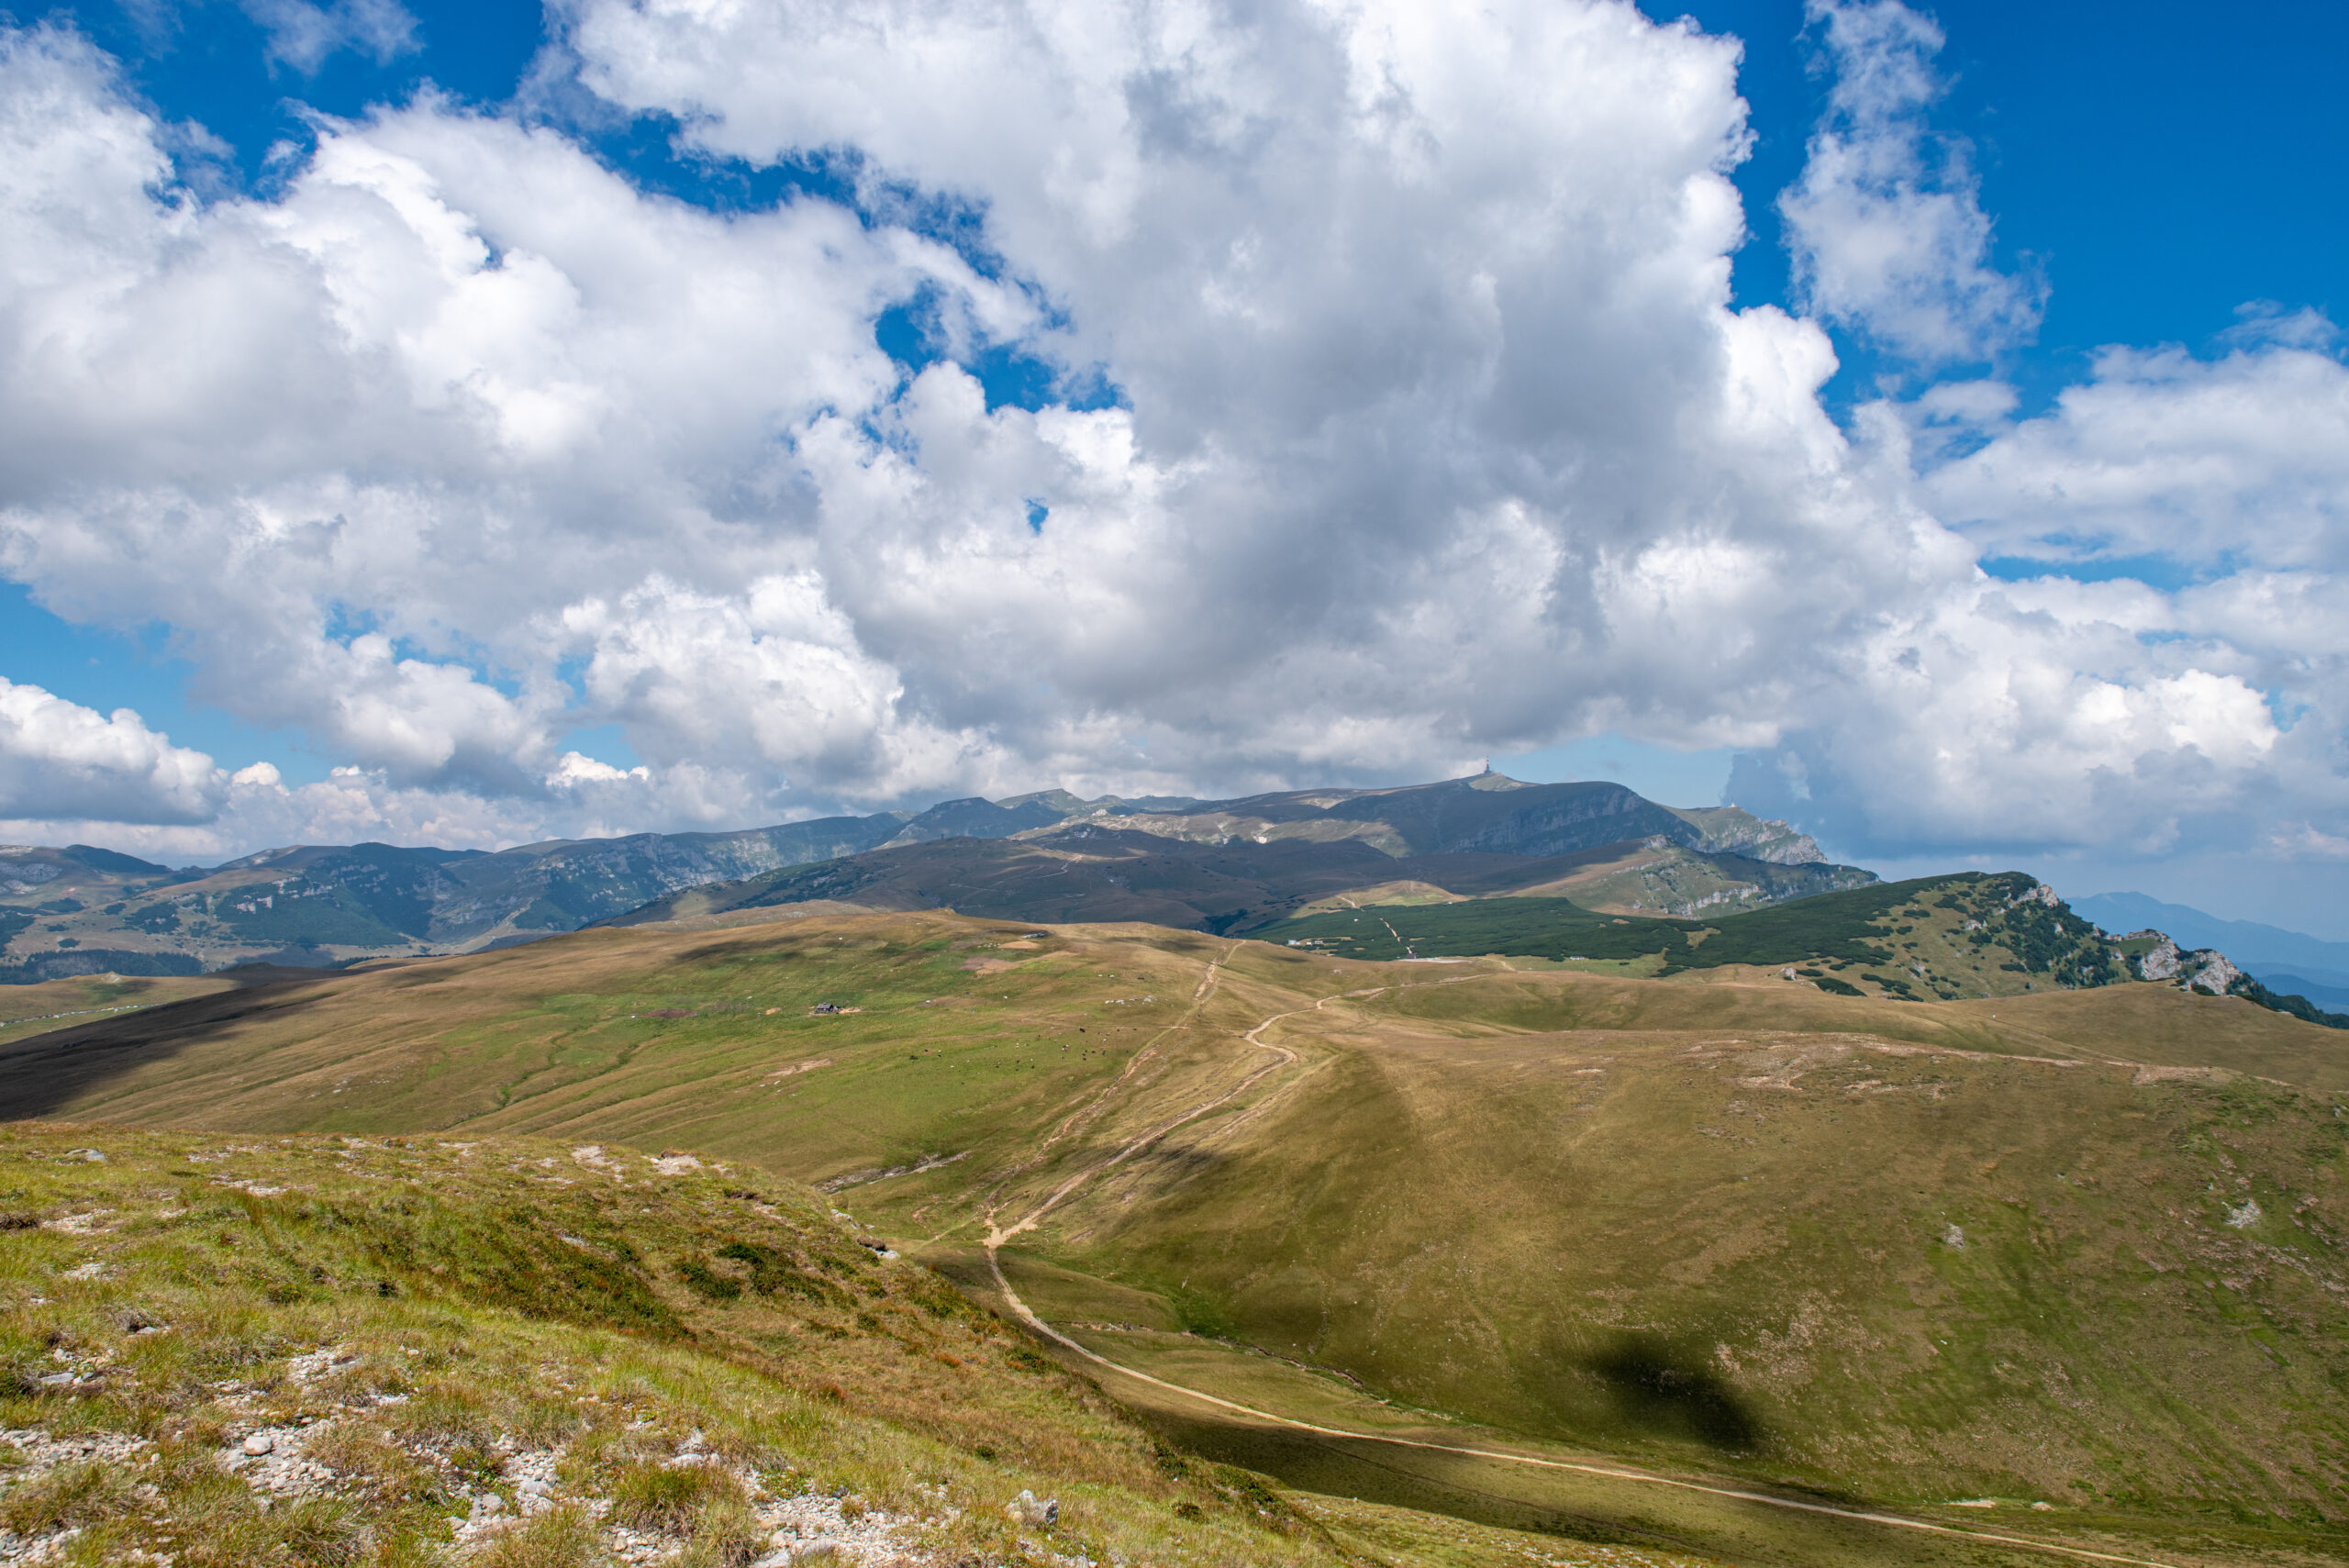 ブラショフから約2時間で行ける展望スポット。ルーマニアのシナヤ山への行き方。